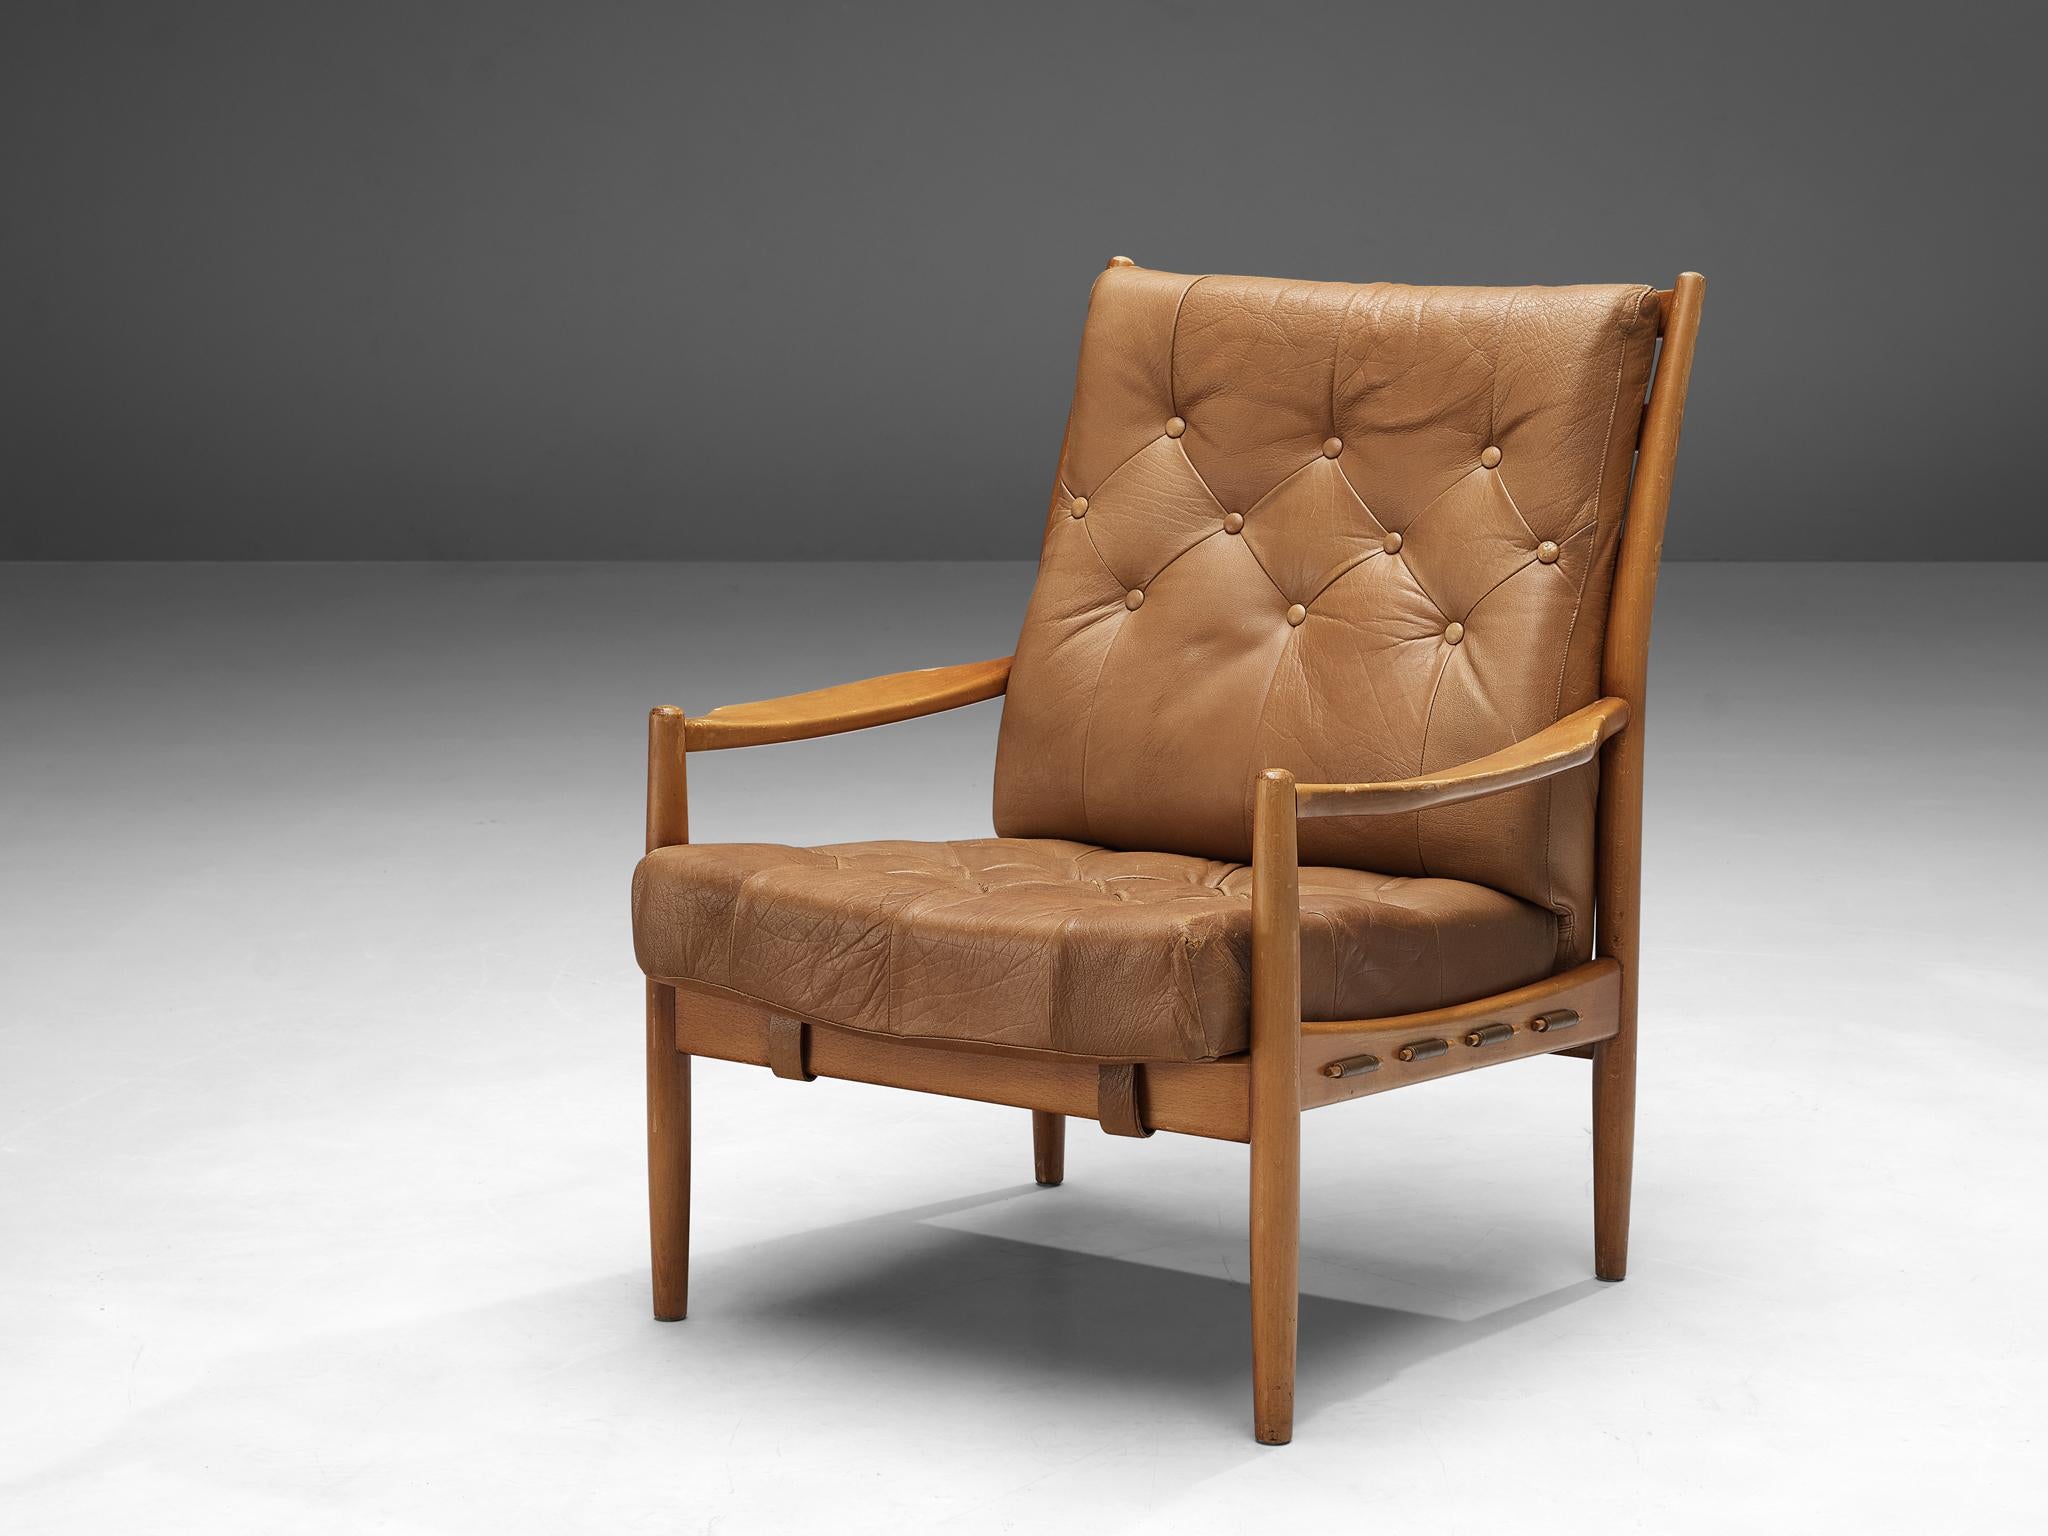 Ingemar Thillmark pour OPE, fauteuil, modèle 'Läckö', cuir, hêtre, Suède, 1965

Le fauteuil Läckö, conçu par Ingemar Thillmark pour Icone, peut être considéré comme une véritable icône du design Modern Scandinavian. Le cadre en bois est une